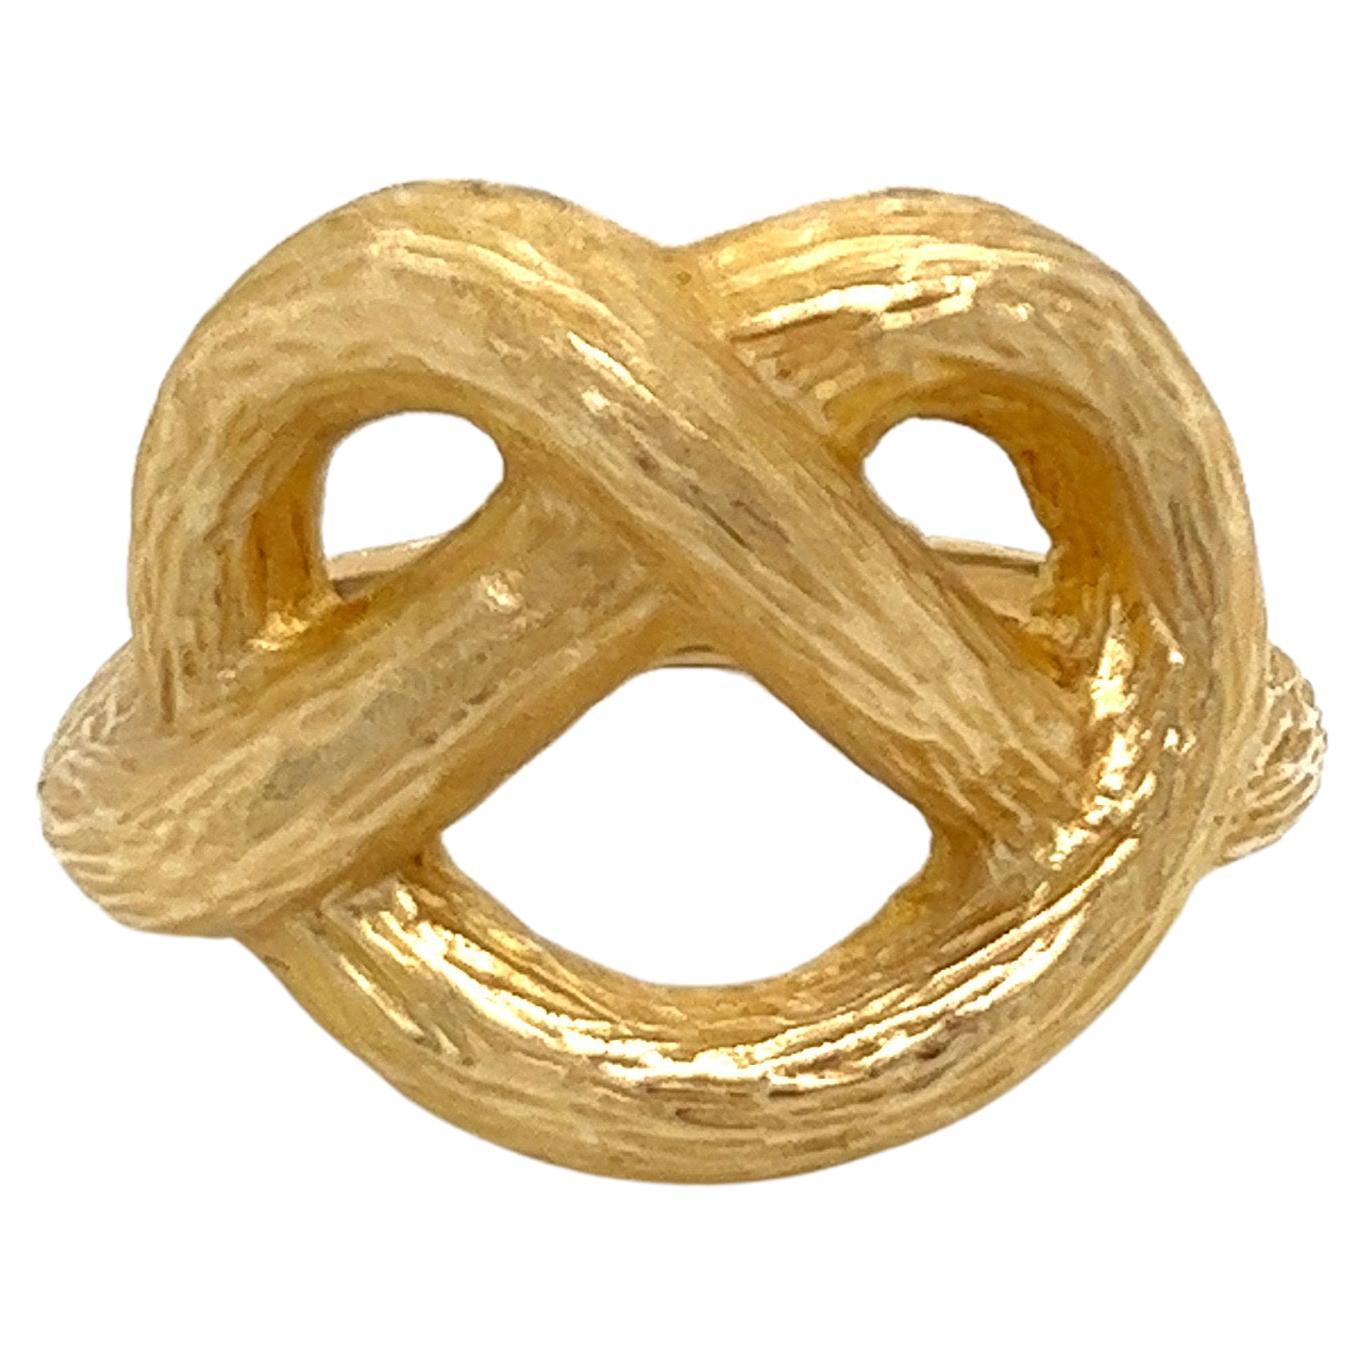 Vintage 1980's 18k Yellow Gold Pretzel Statement Ring